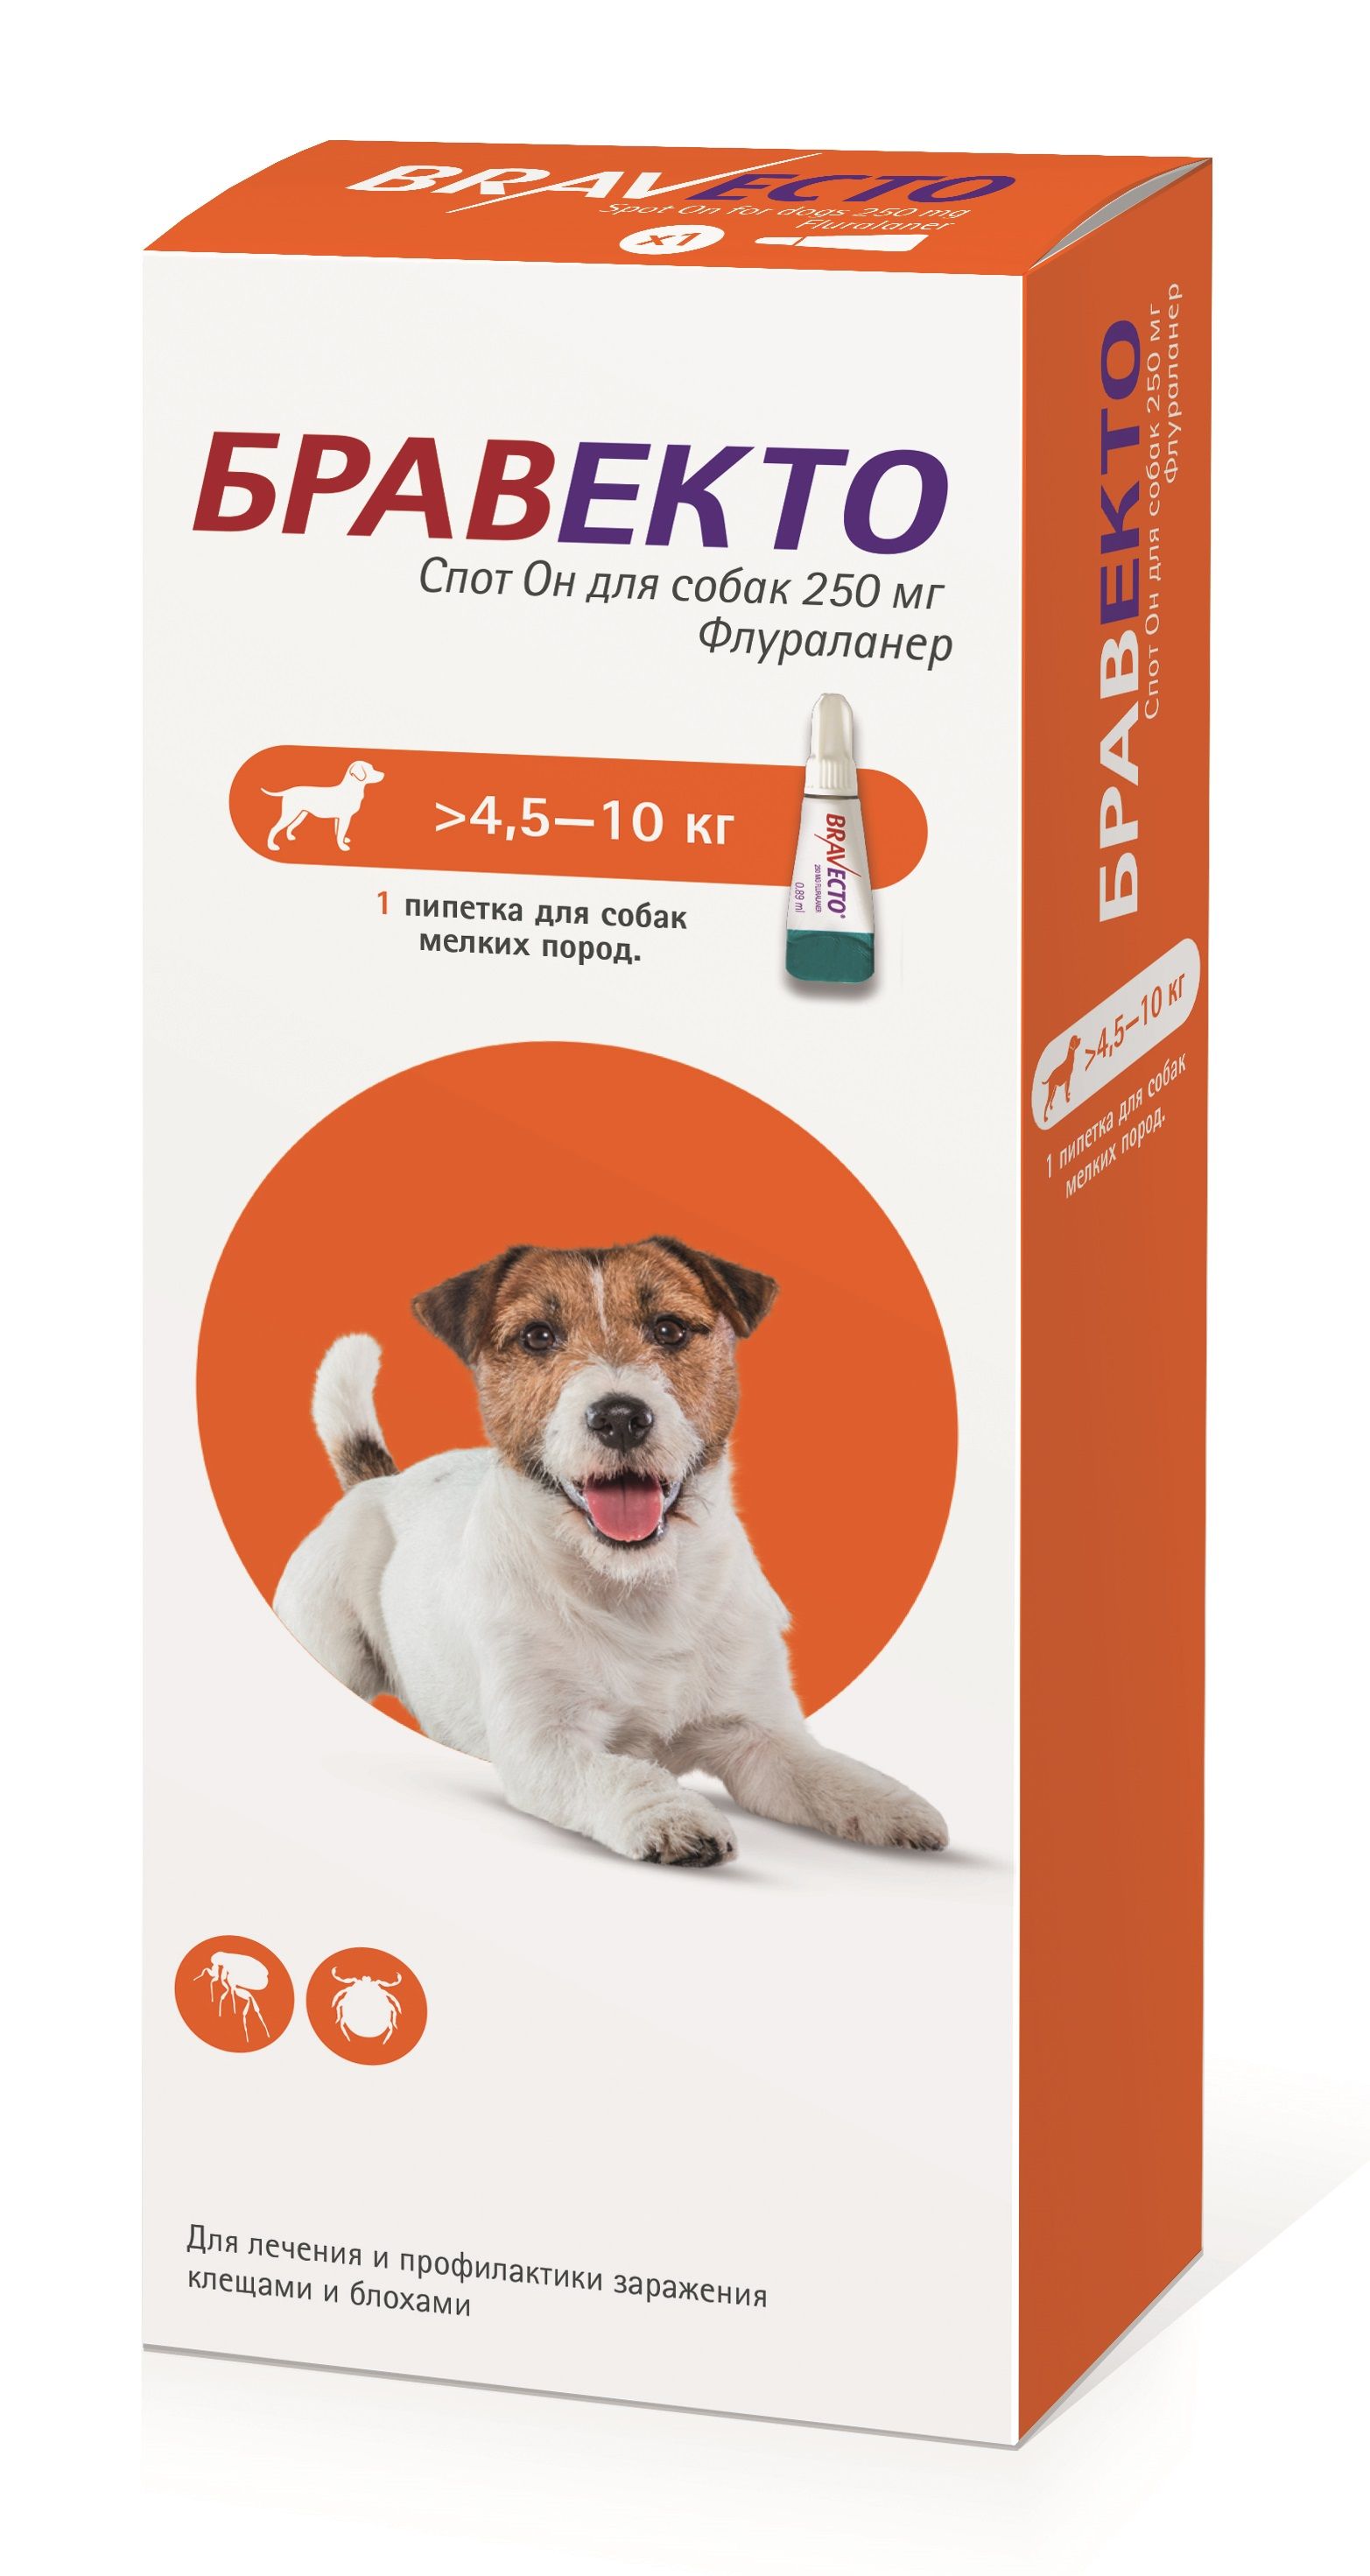 Бравекто для собак 5 10 кг. Бравекто (MSD animal Health) капли от блох и клещей спот он для собак 4,5-10 кг. Intervet Бравекто для собак 40-56. Бравекто таблетка для собак 4 5 10 кг.